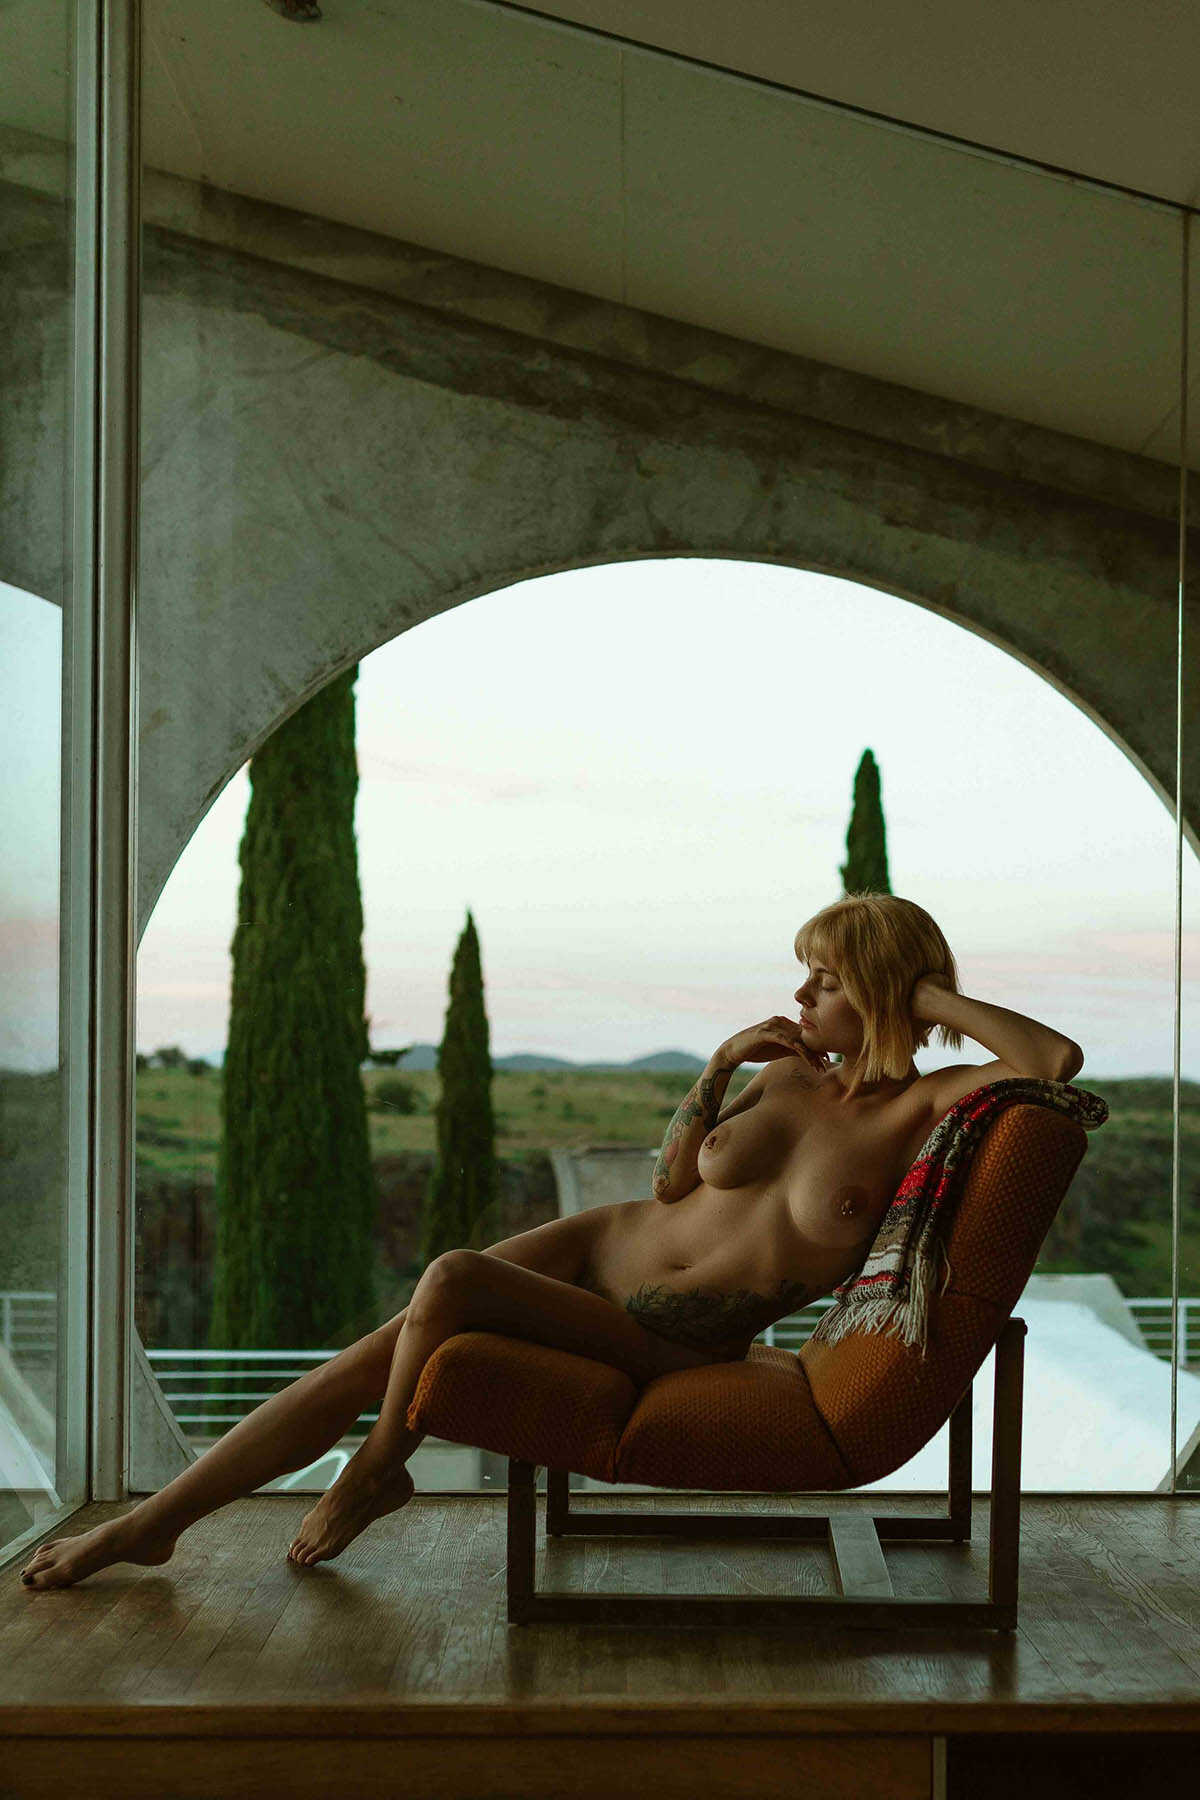 Γυμνές φωτογραφίες της μουνάρας μοντέλου Marilyn